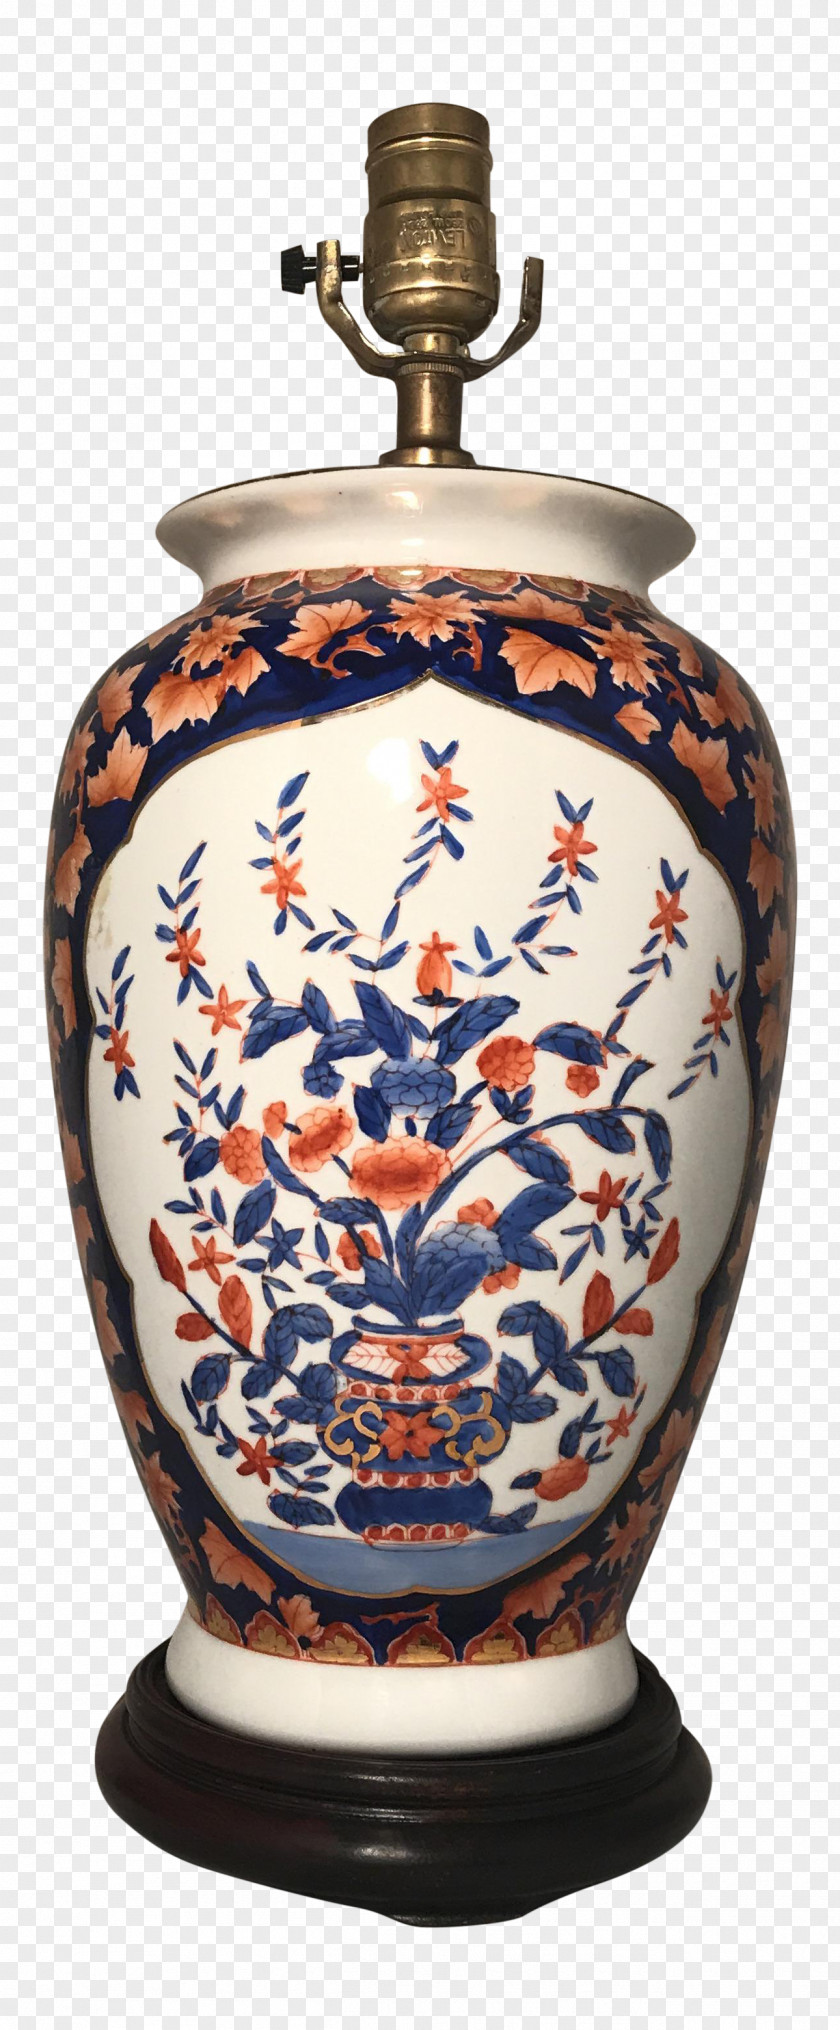 Vase Porcelain Pottery Urn PNG